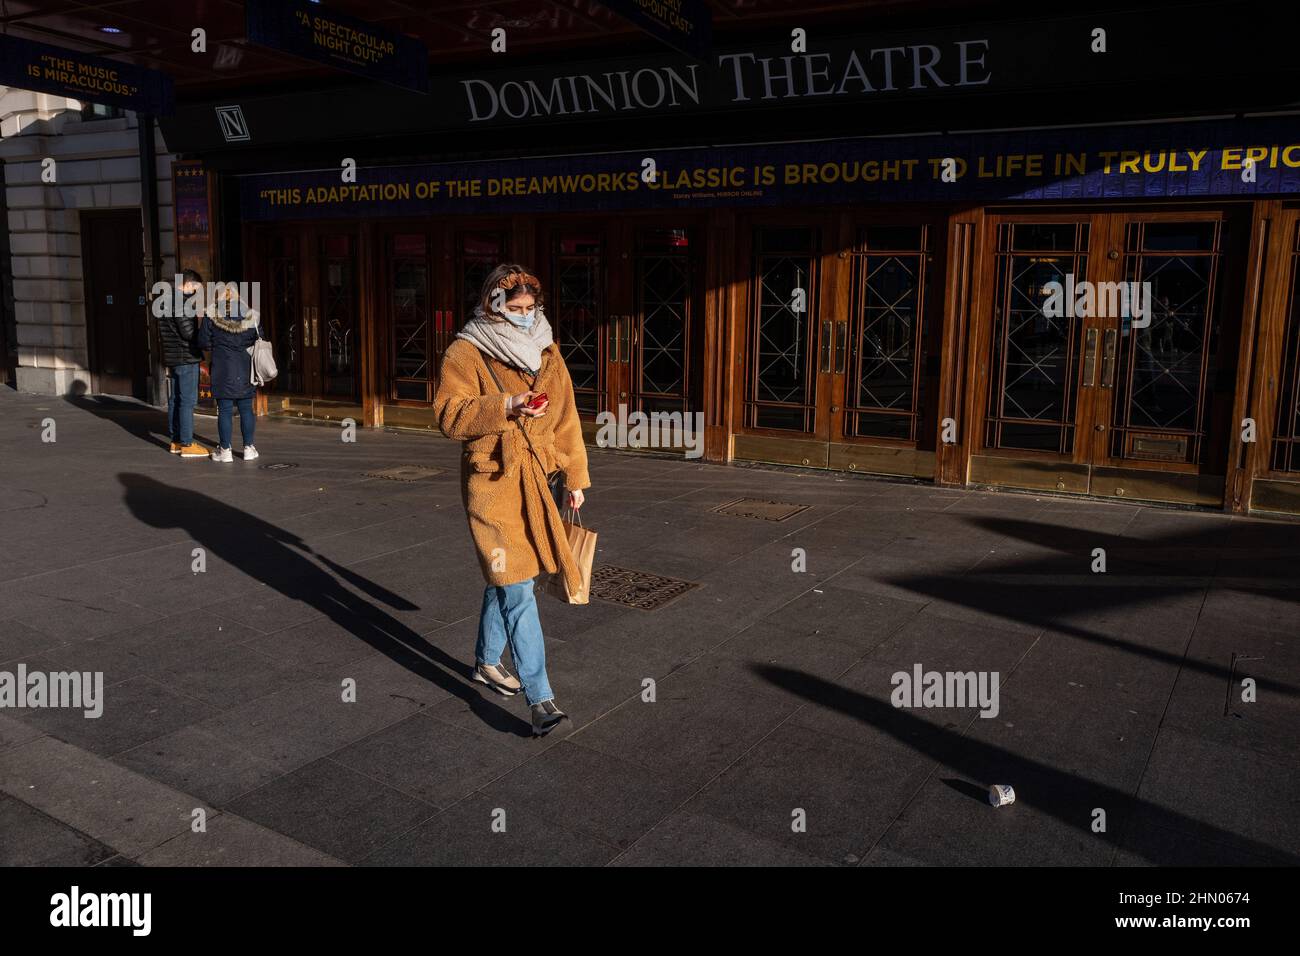 Una donna passa davanti al Dominion Theatre nel West End di Londra in una mattinata invernale allegra ma fredda. Londra, Regno Unito Foto Stock